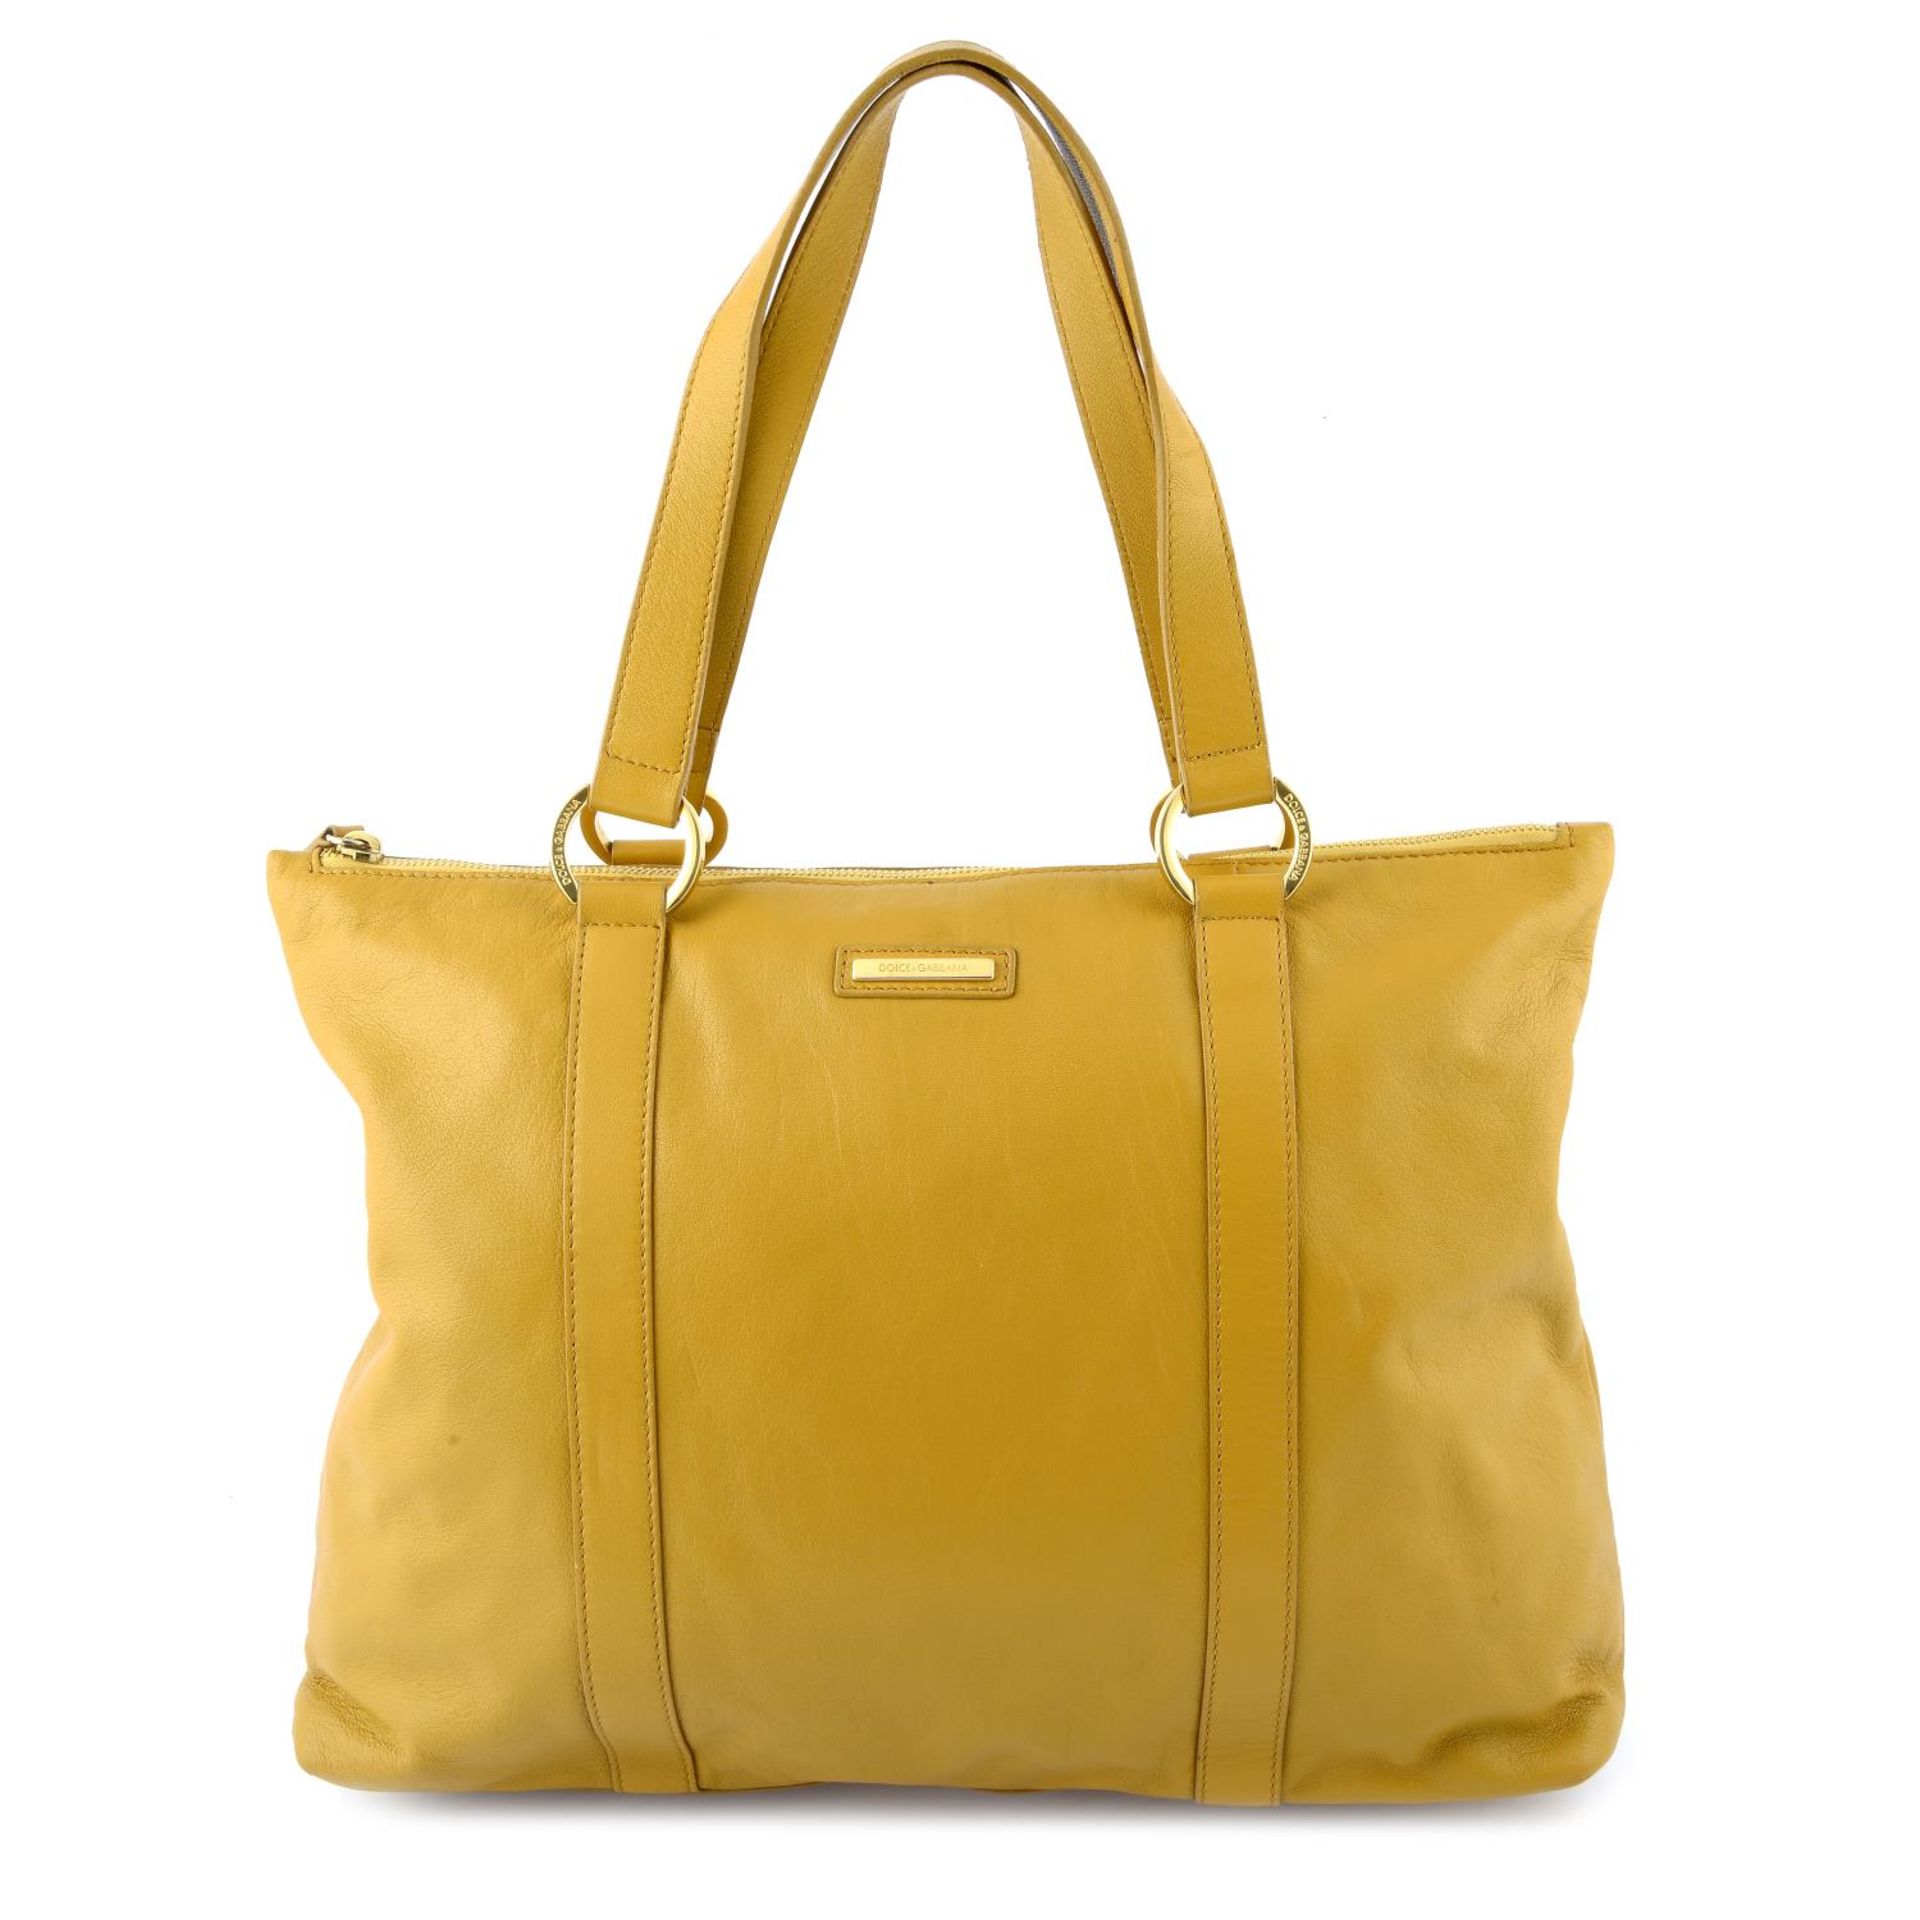 DOLCE & GABBANA - a mustard yellow leather handbag.